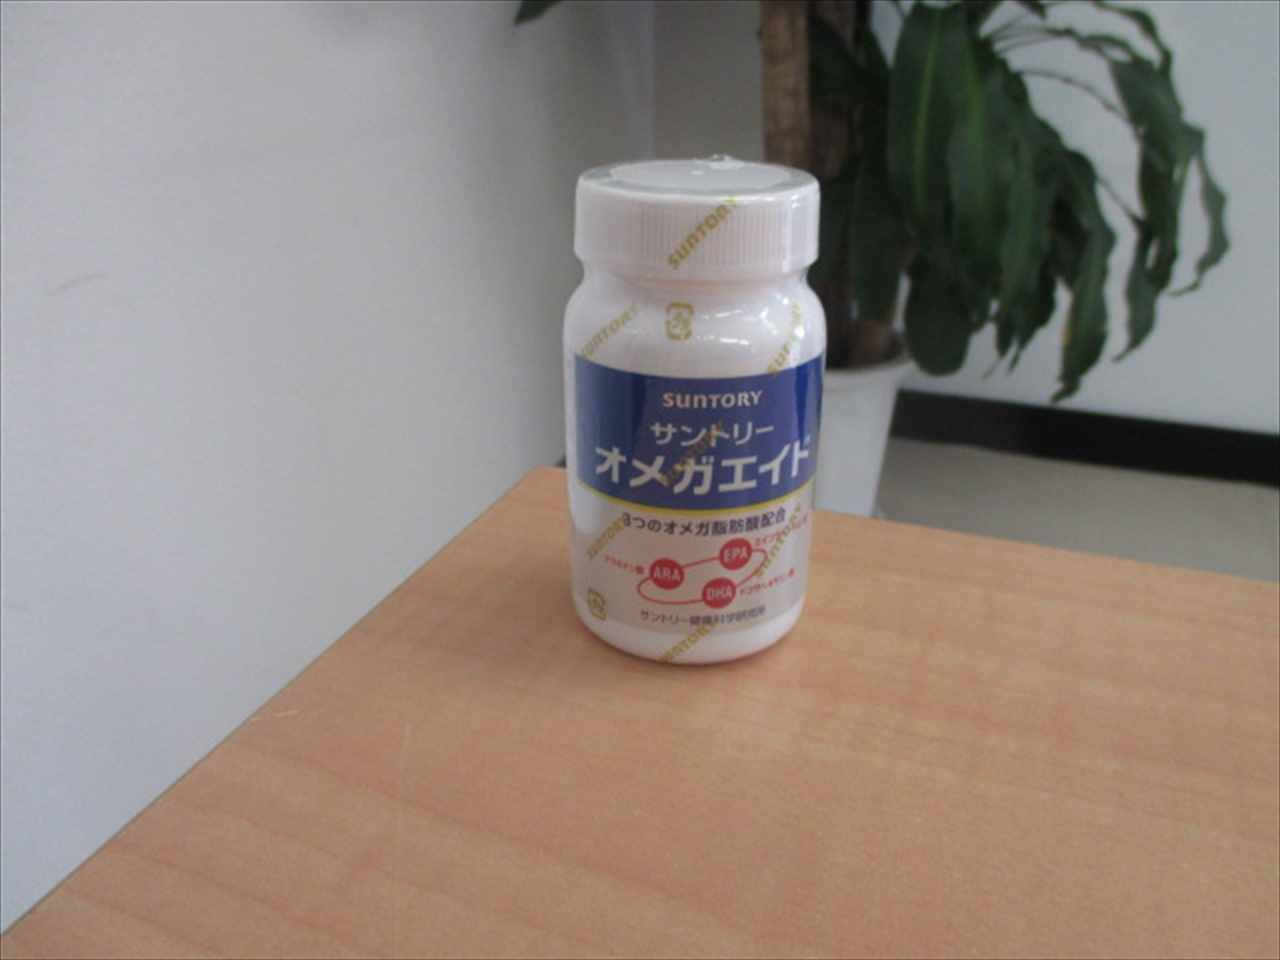 オメガ エイド 動物用医薬品のゼノアック 日本全薬工業